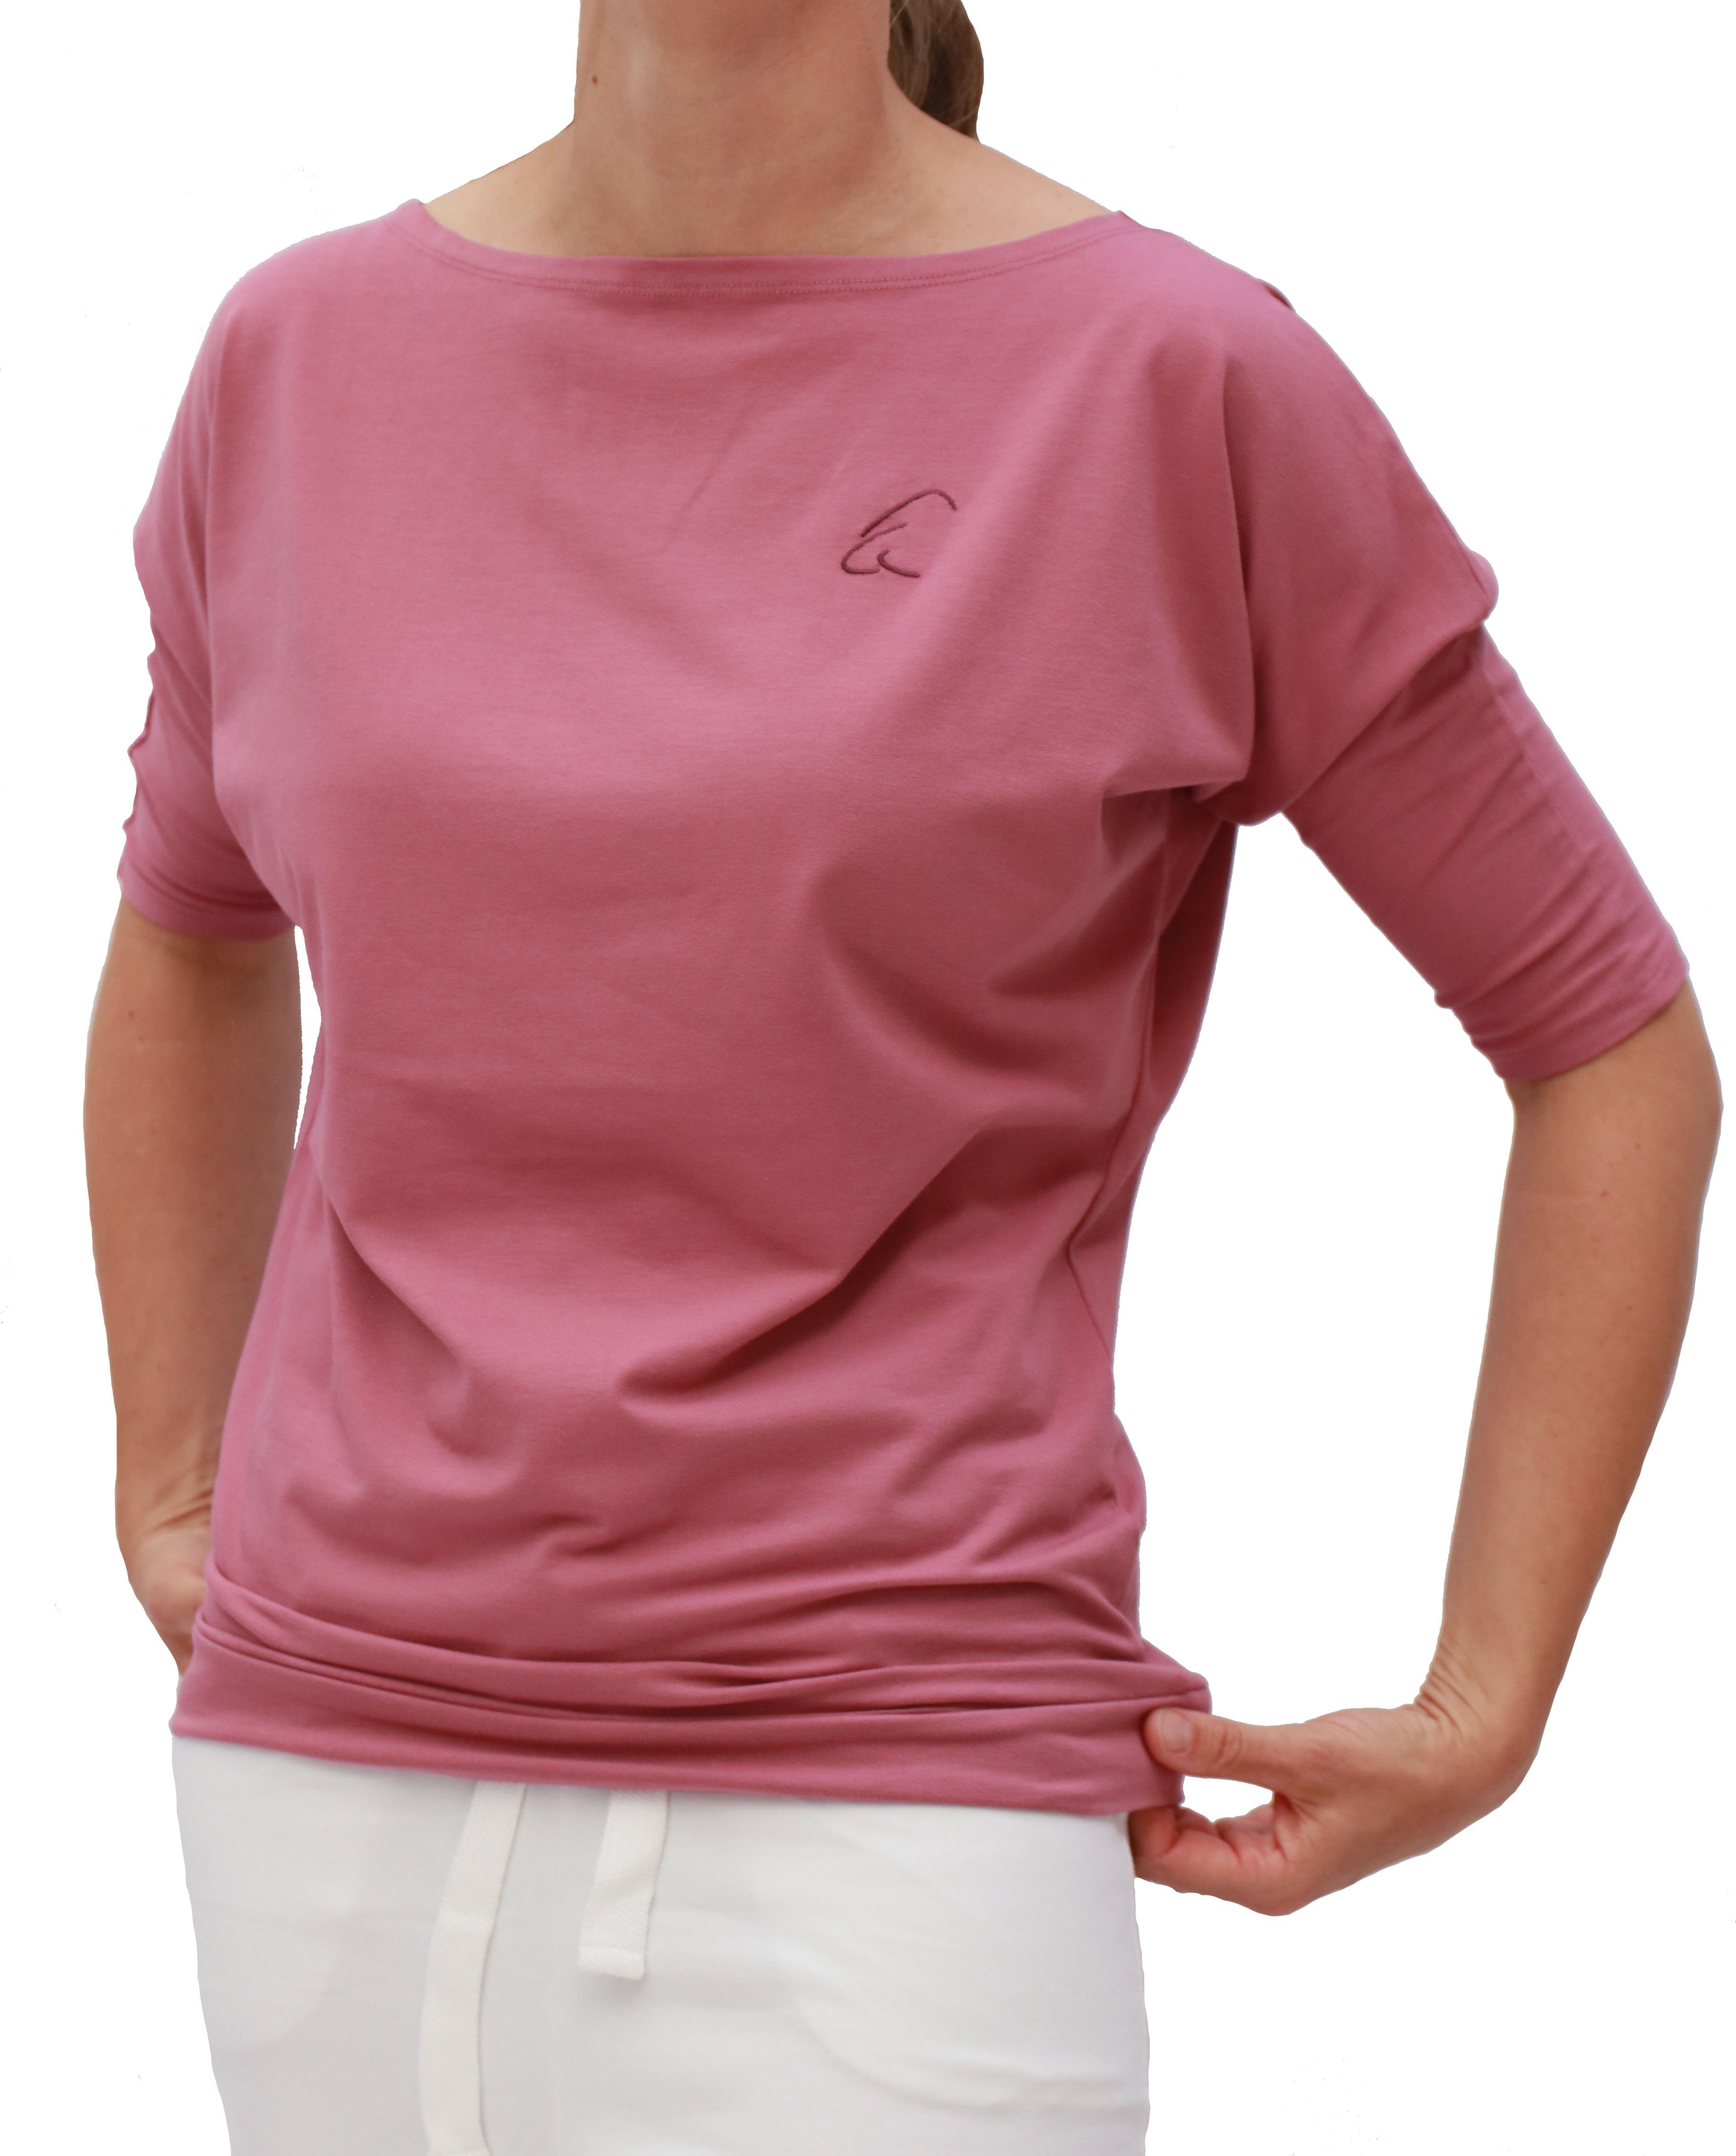 Sadaa mit Heiderose Halbarmshirt Yogashirt ESPARTO Bio-Baumwolle (U-Boot-Ausschnitt) Wohlfühlshirt in breitem Schulterausschnitt